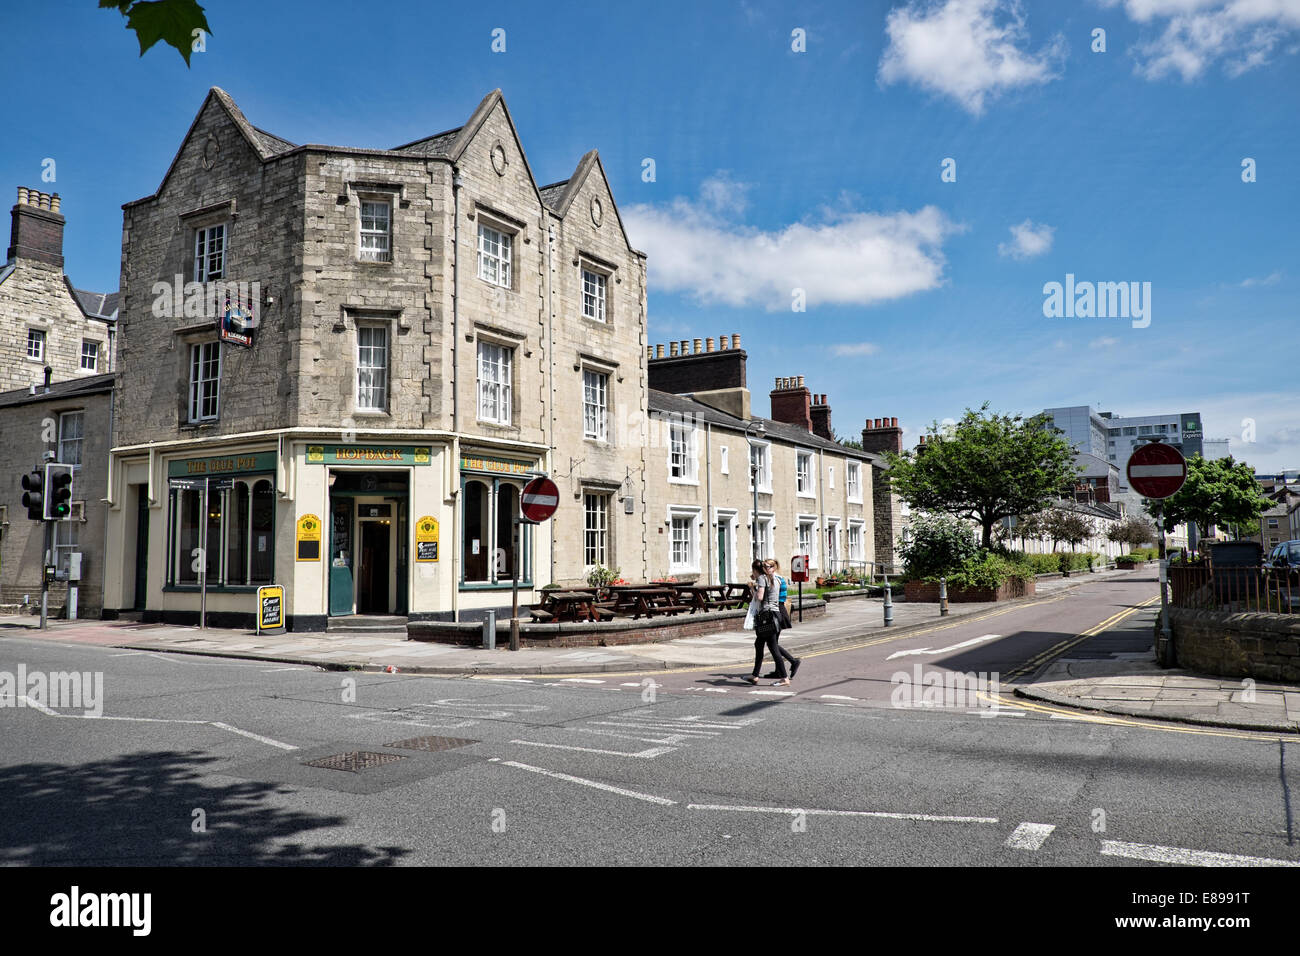 Der Leim Topf traditionelle britische Pub auf Emlyn Platz mitten in der historischen erhalten GWR Eisenbahn Dorf in Swindon, Großbritannien Stockfoto